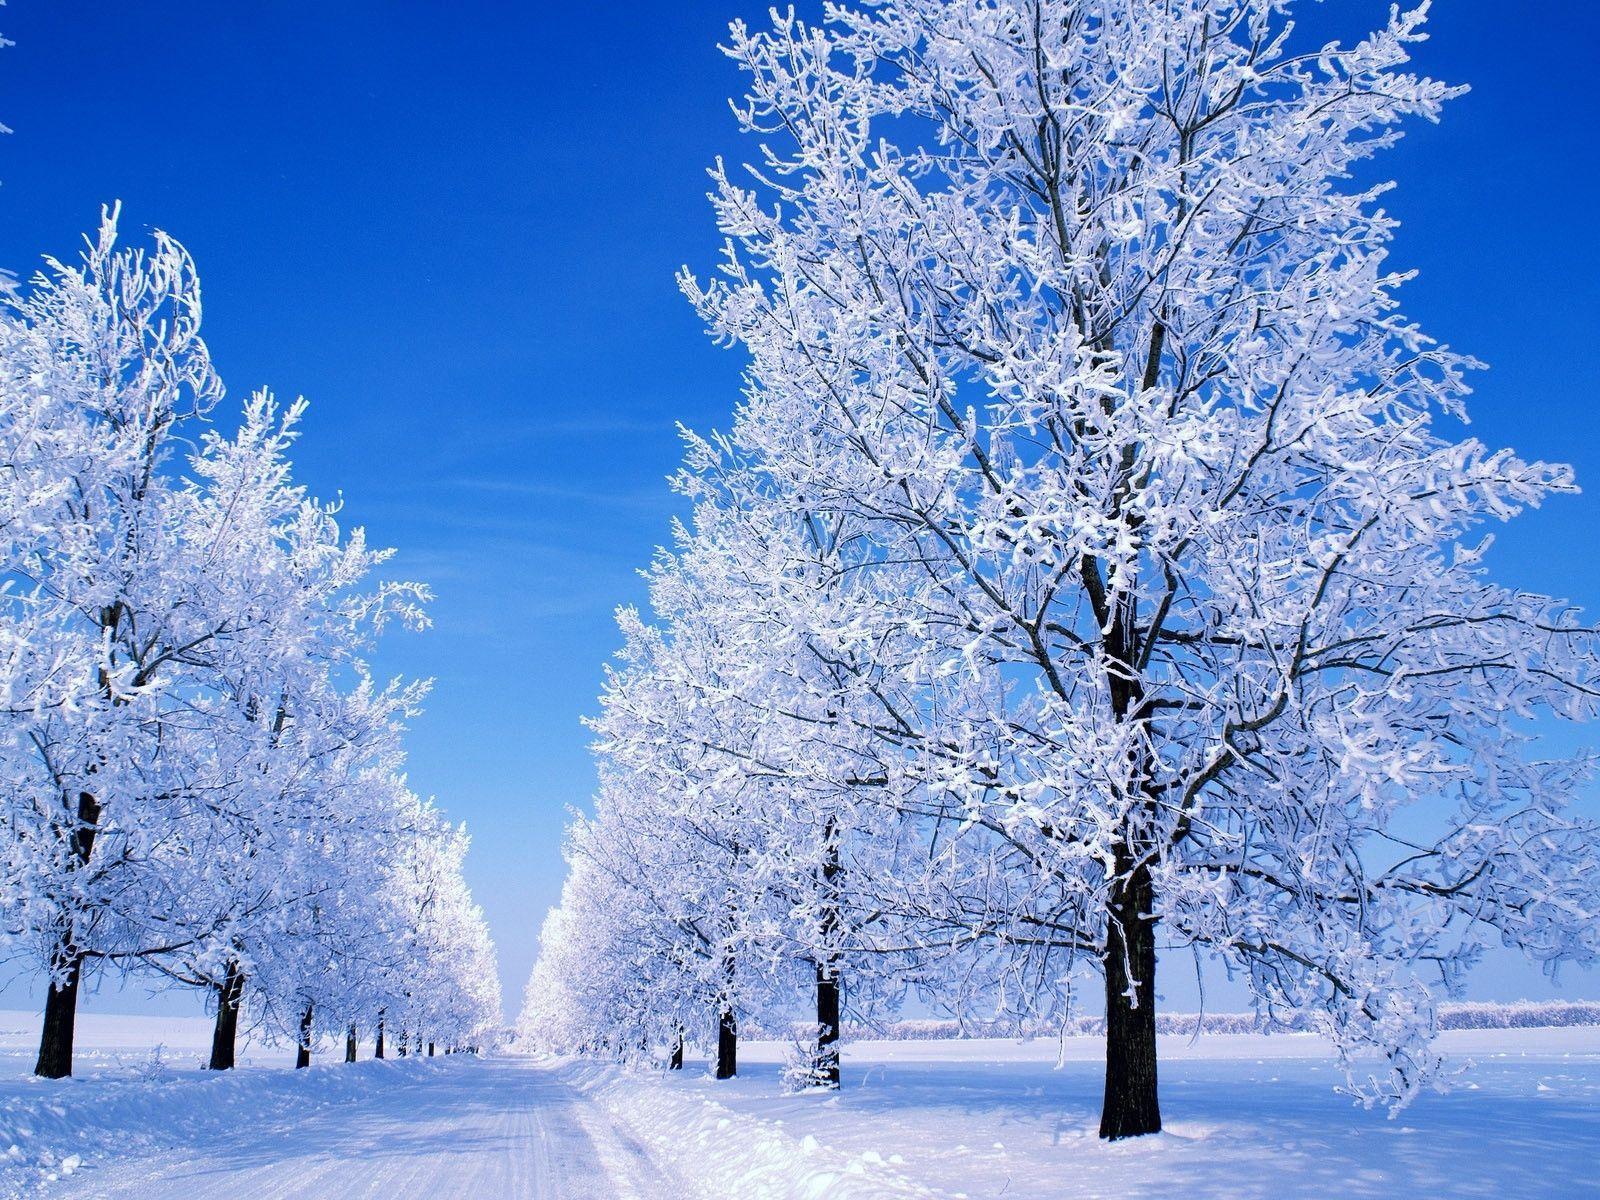 Snowy Scene Wallpaper - Serbia In The Winter , HD Wallpaper & Backgrounds